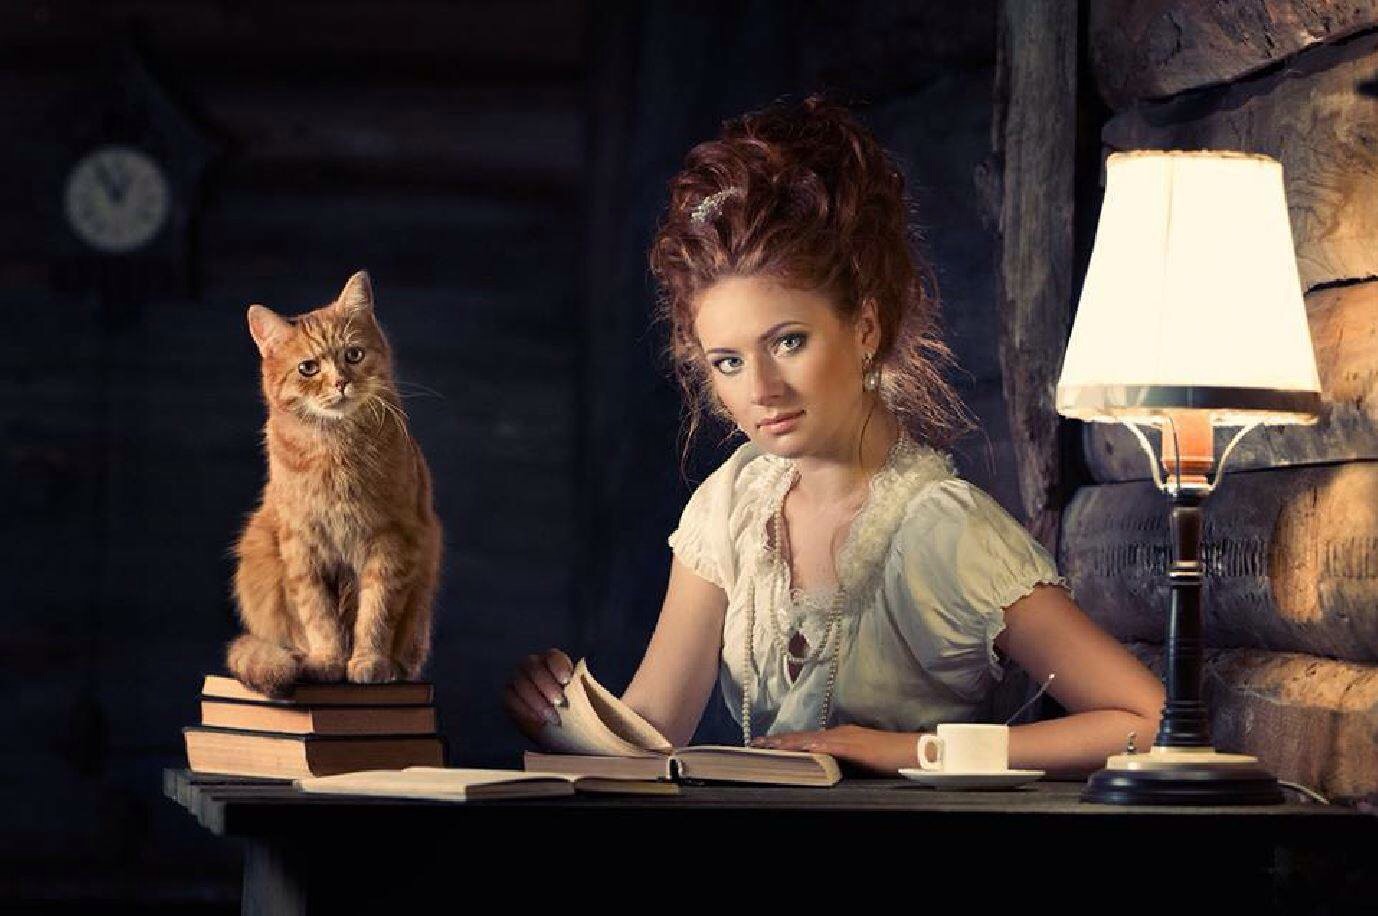 Олег Ярунин: сказочные фотографии с рыжим котом